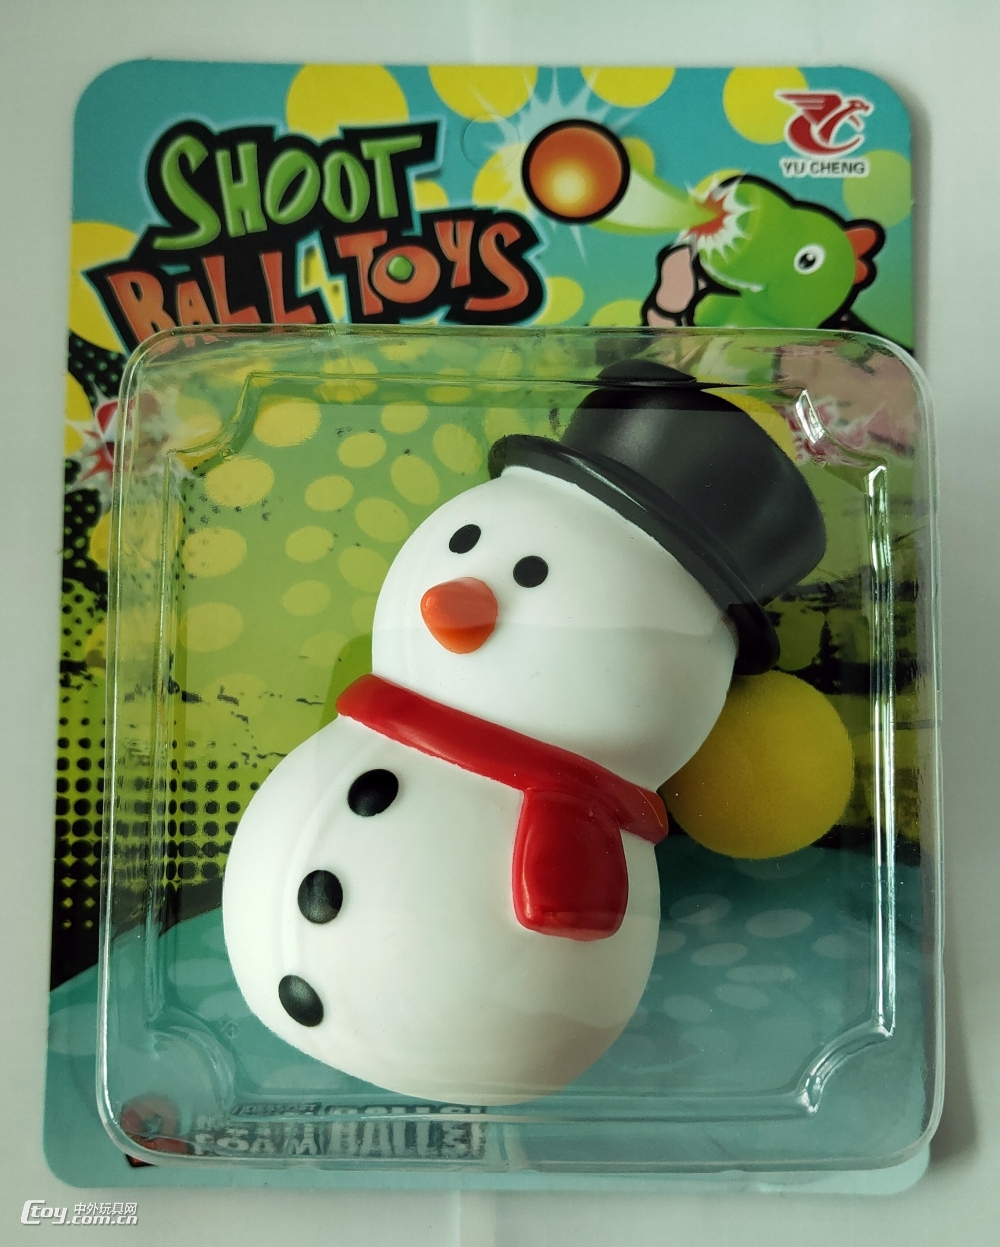 圣诞节玩具雪人弹射球(带5EVA球）